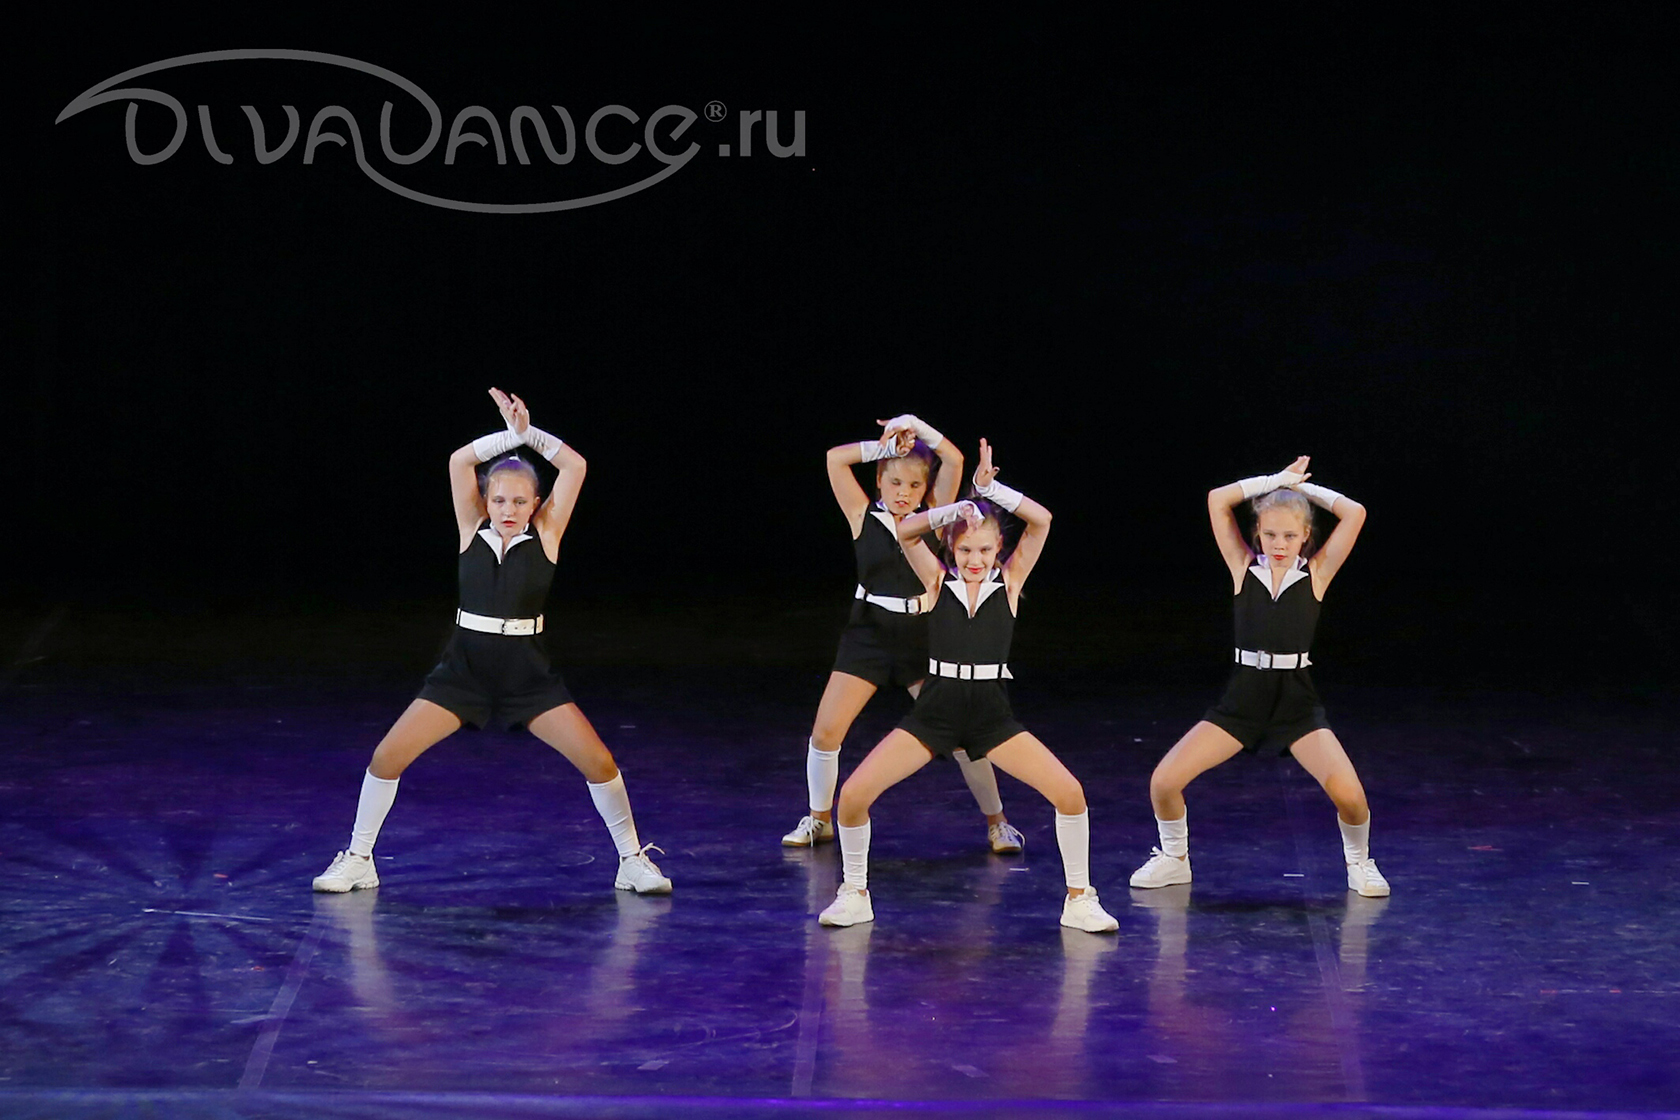 Танец в стиле вог - vogue dance - занятия от Диваданс - школа танца в Санкт-Петербурге, Divadance